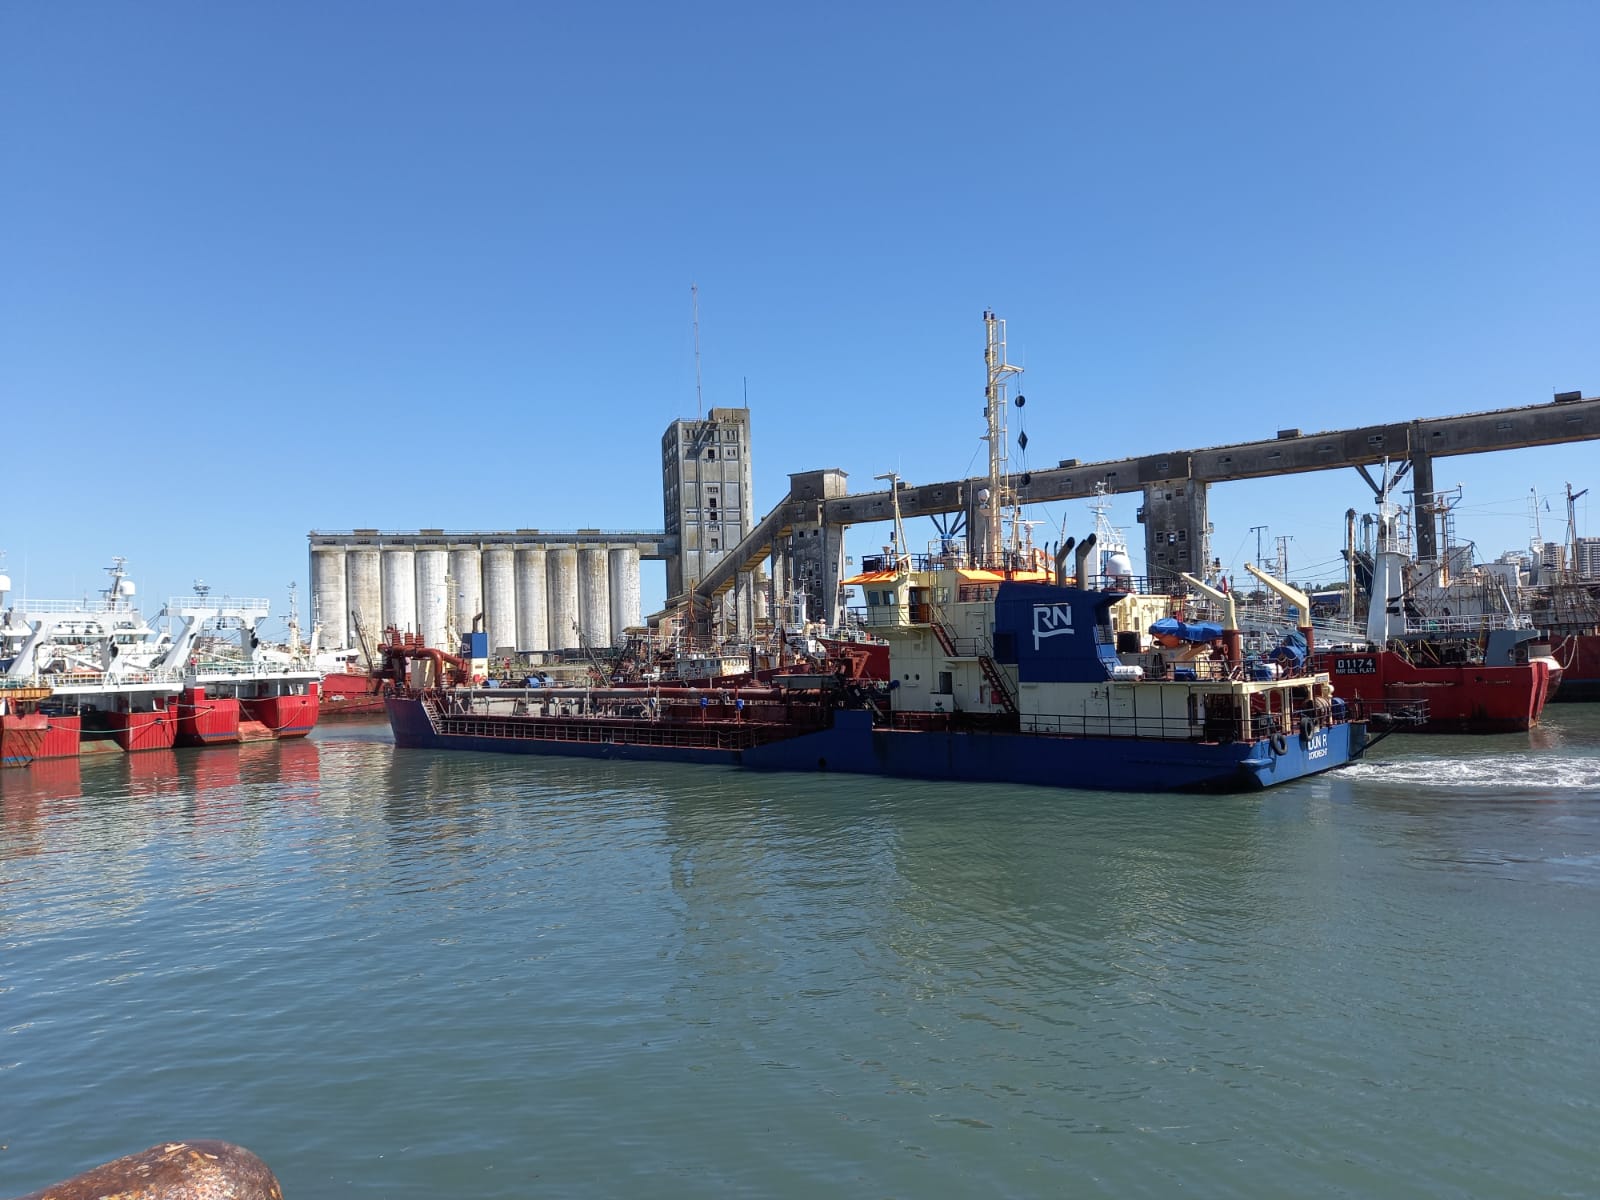 Avanza a buen ritmo la obra de dragado en el puerto de Mar del Plata